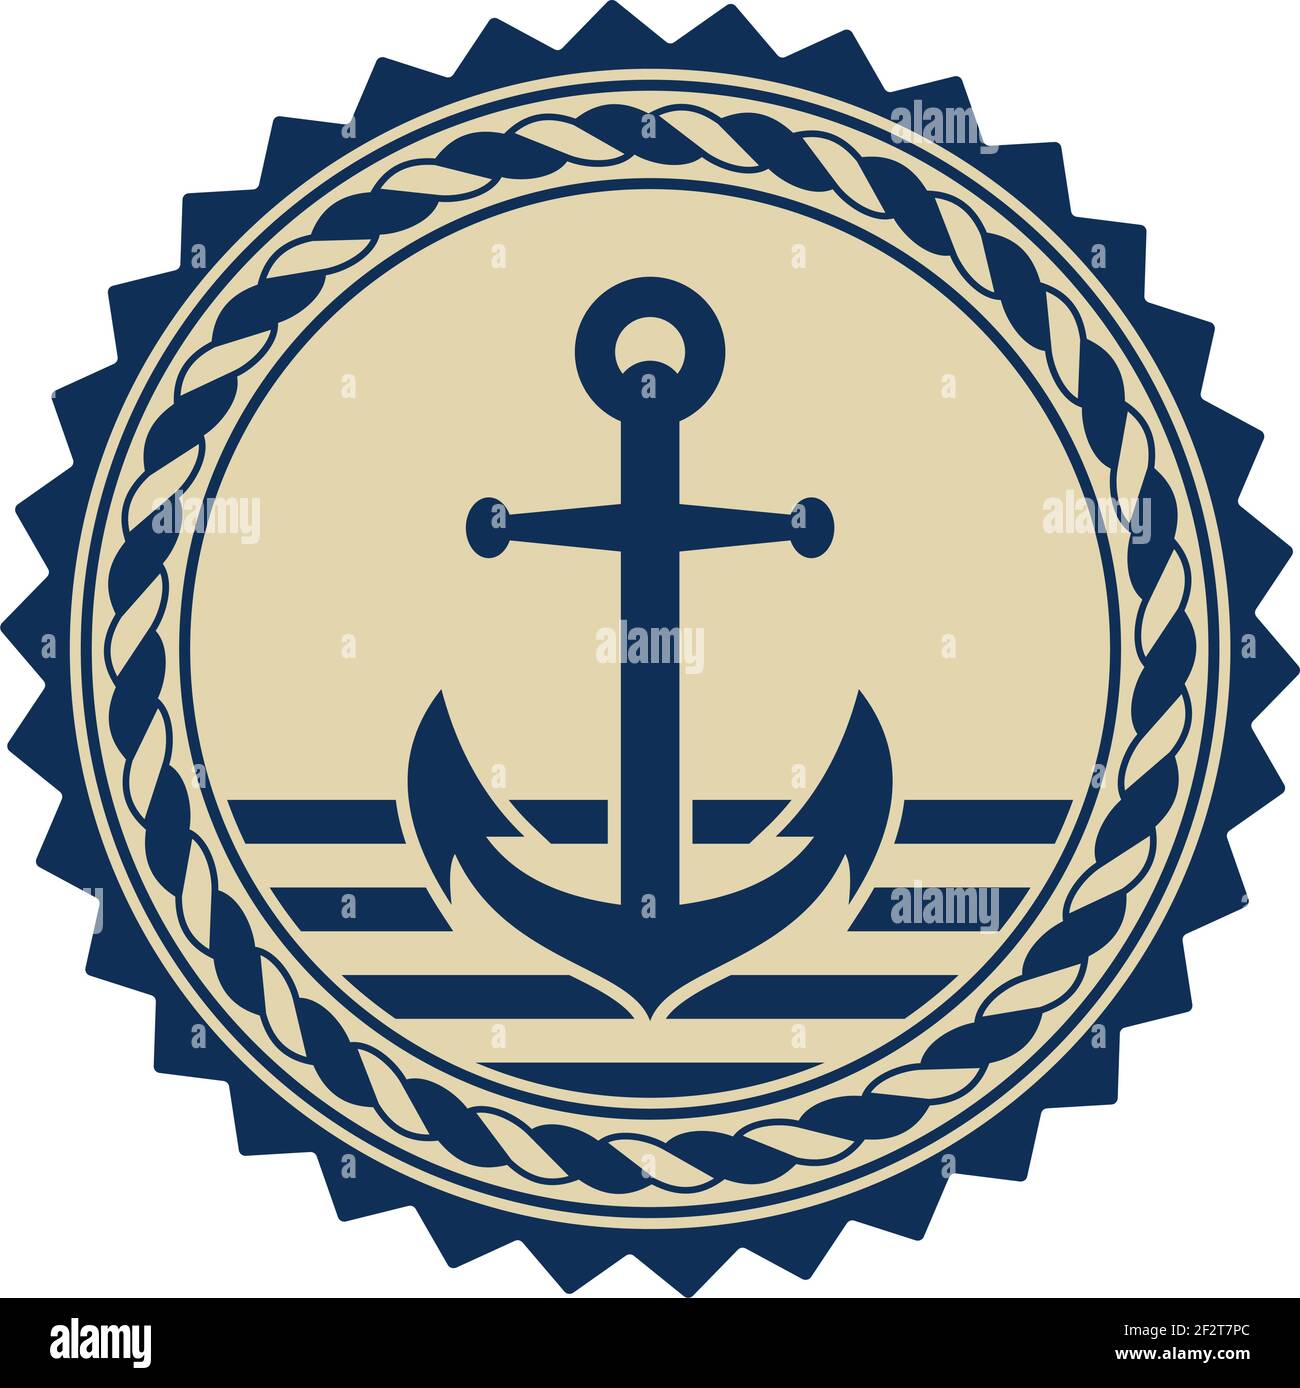 Vettore simbolo di ancoraggio con corda nautica di colore blu marino e  beige su fondo bianco isolato. Utilizzabile come simbolo marino e nautico  Immagine e Vettoriale - Alamy